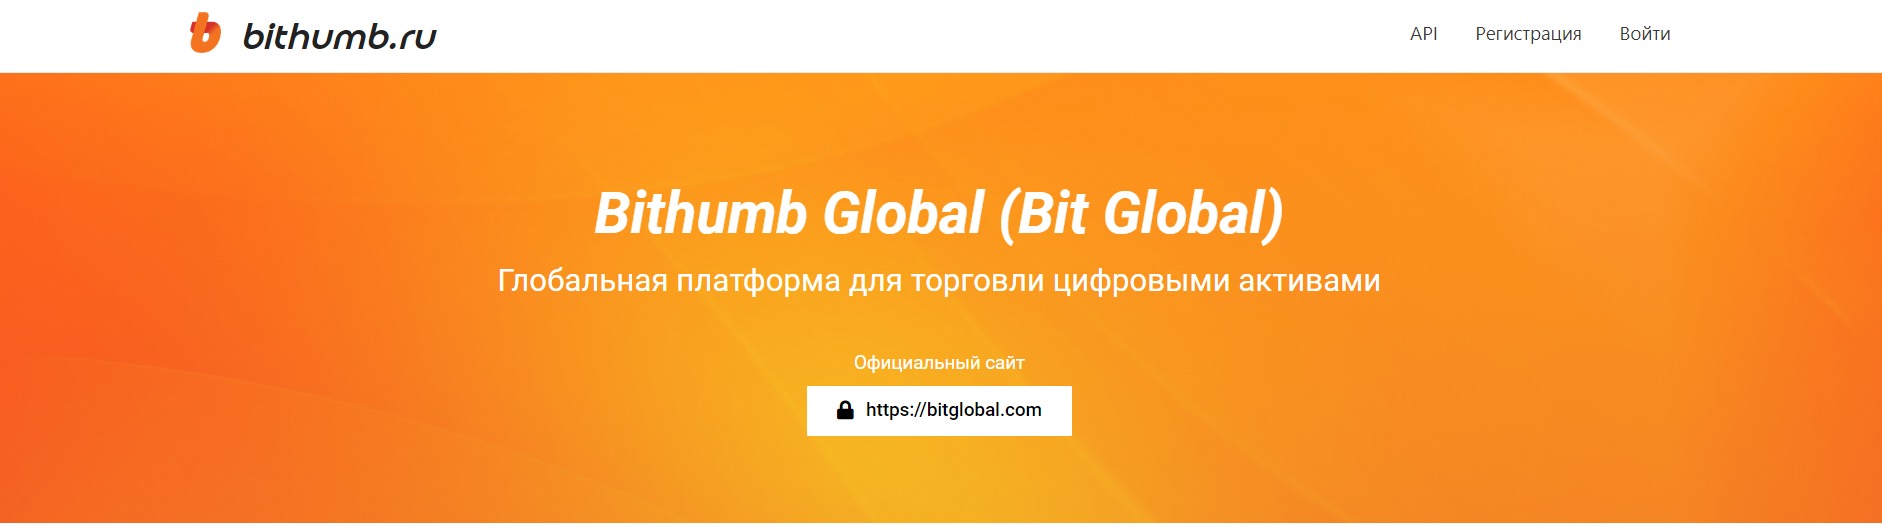 Сайт Bithumb